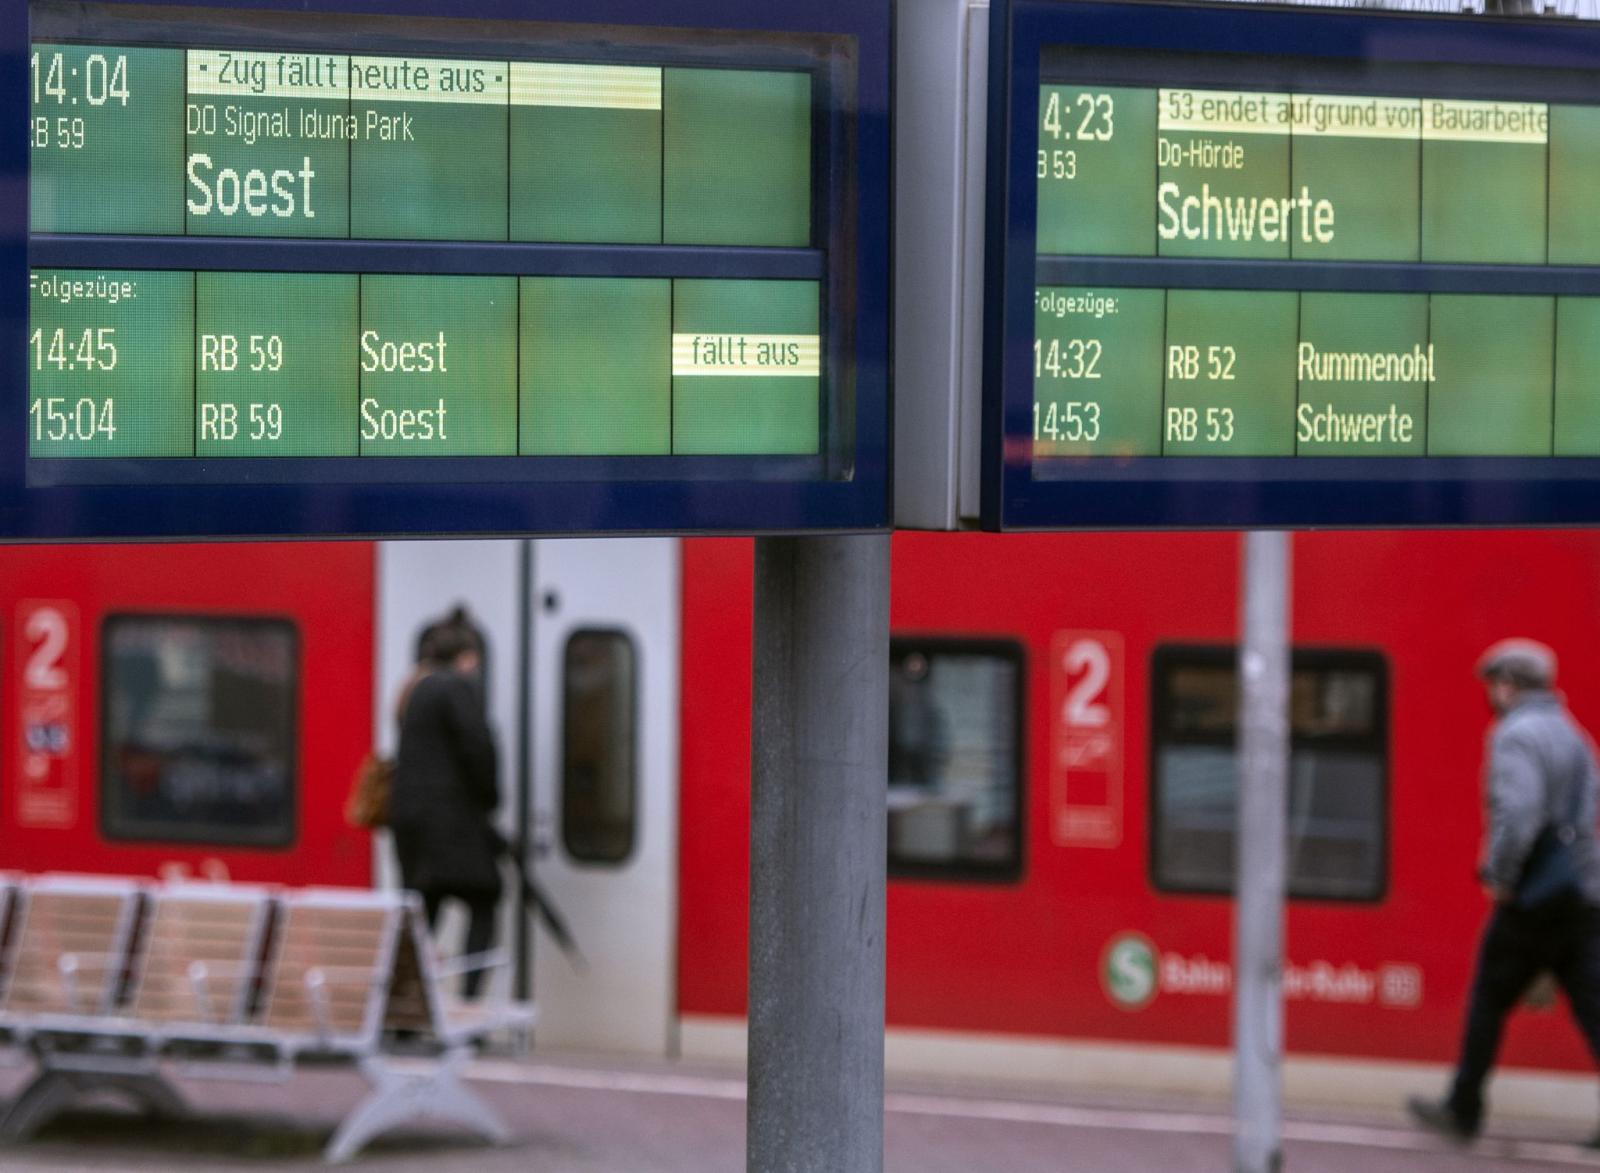 Zugausfälle sind auf einer Anzeigetafel im Hauptbahnhof zu lesen.